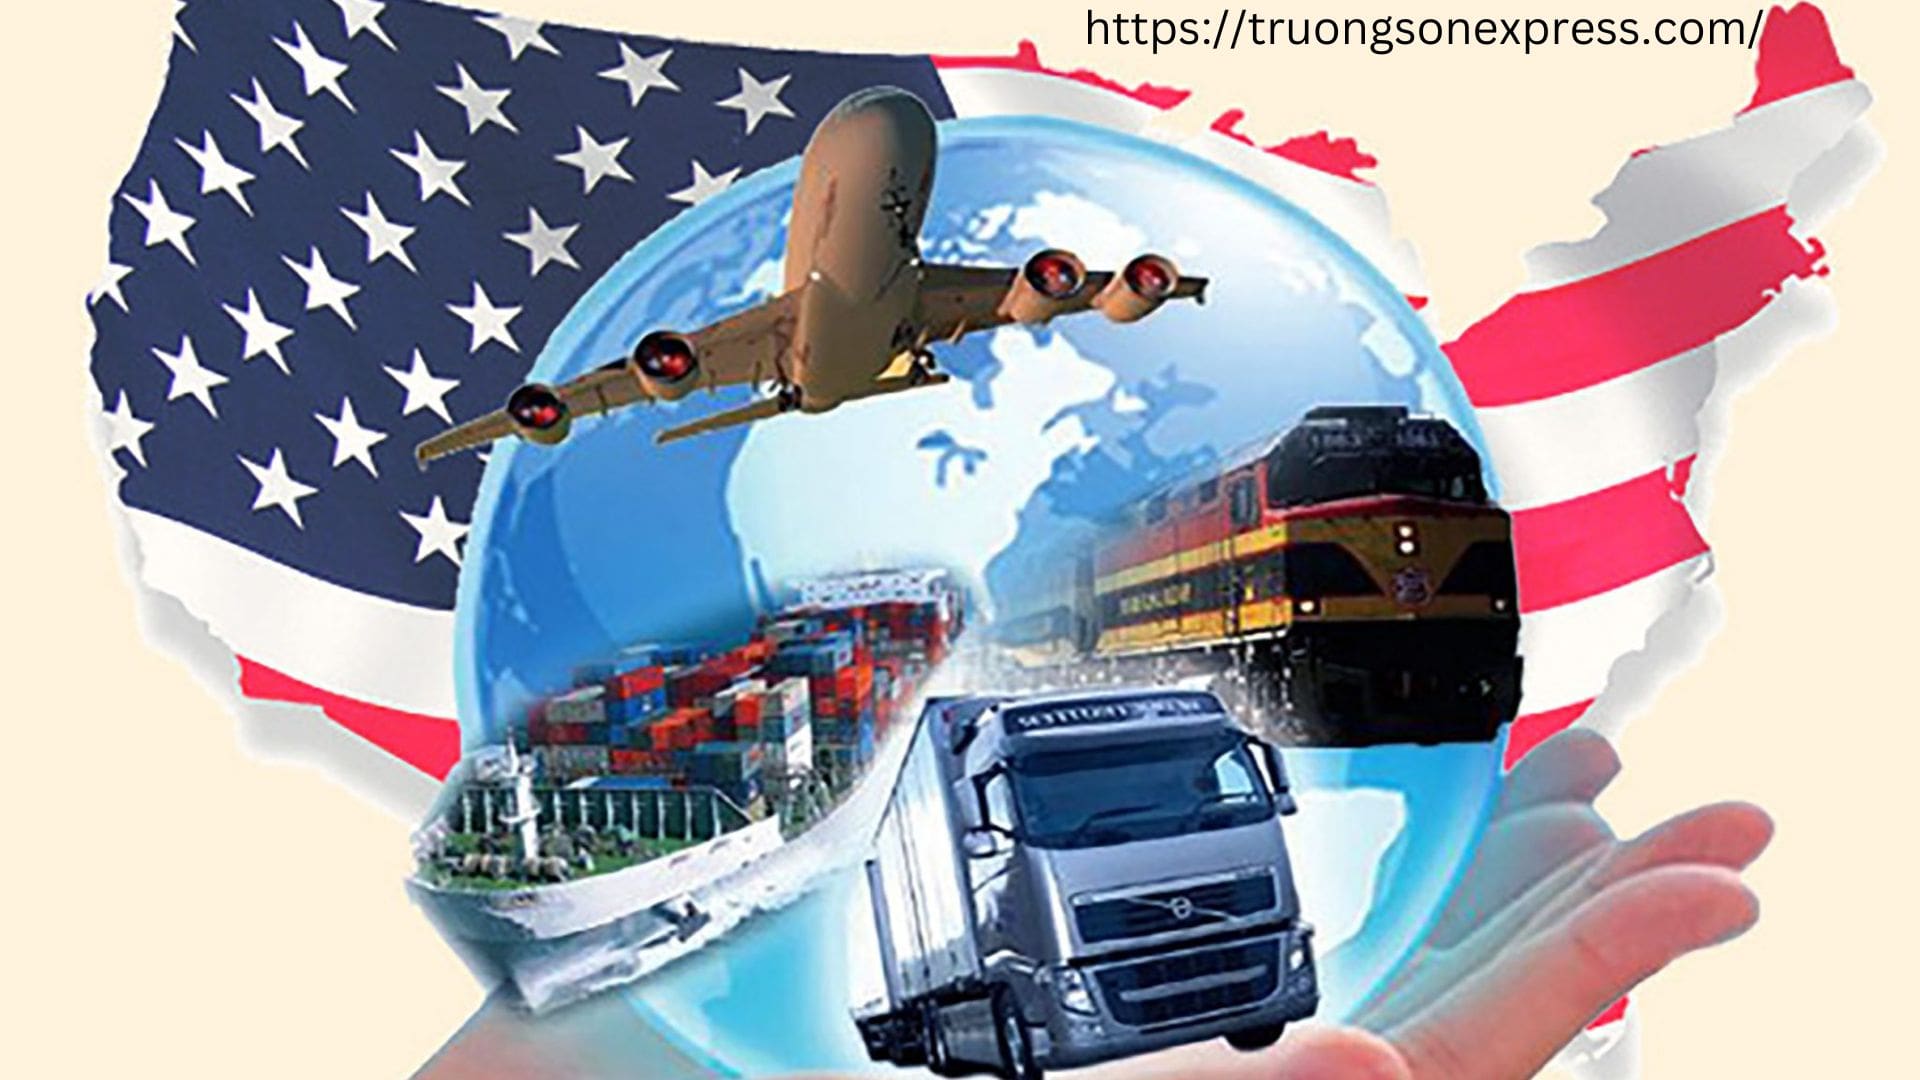 Truongson Express - Dịch vụ ship hàng đi Mỹ tại Hà Nội chất lượng